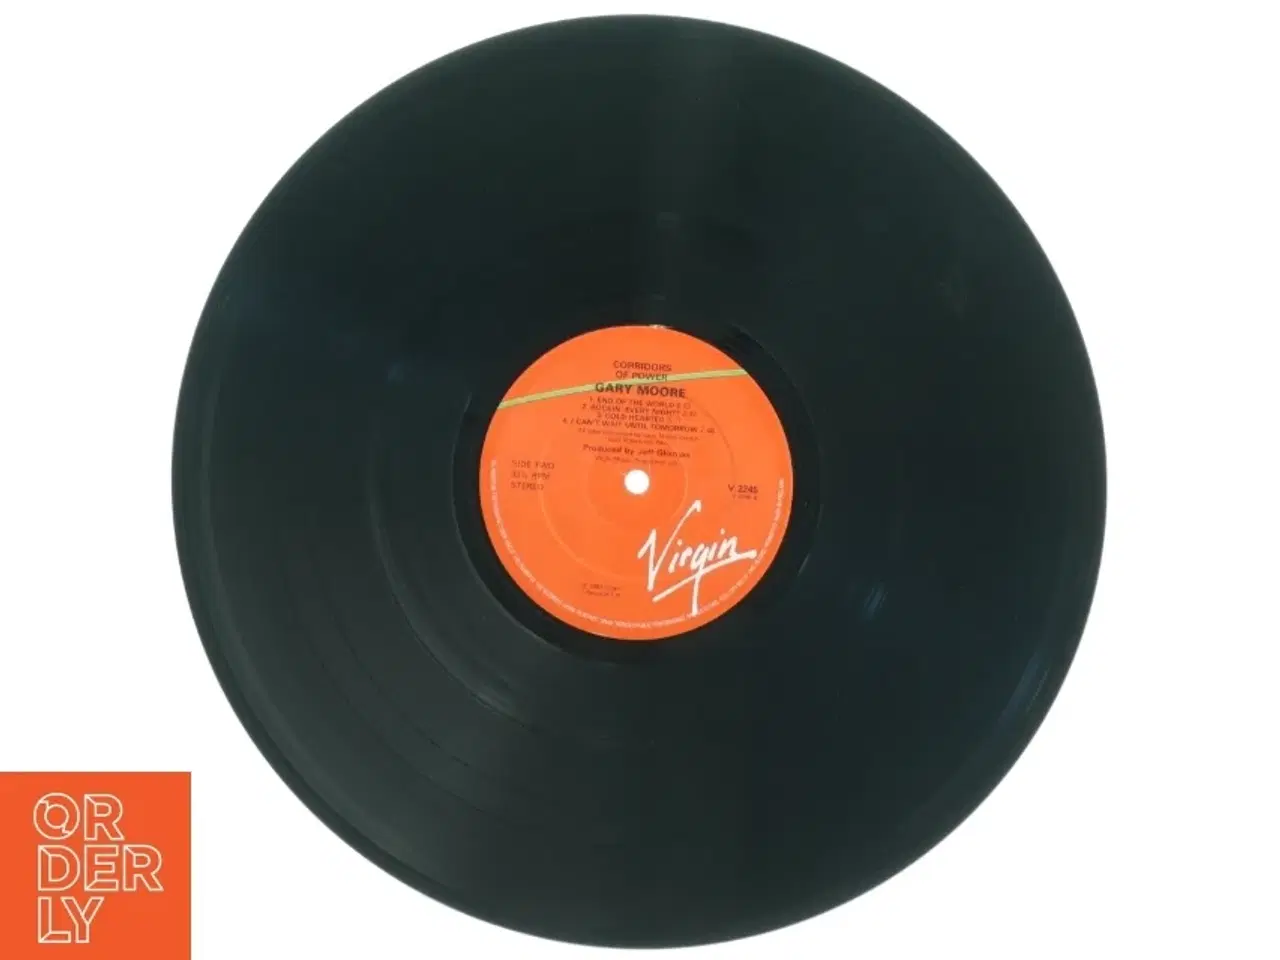 Billede 3 - Gary Moore - Corridors of Power LP fra Virgin Records (str. 31 x 31 cm)